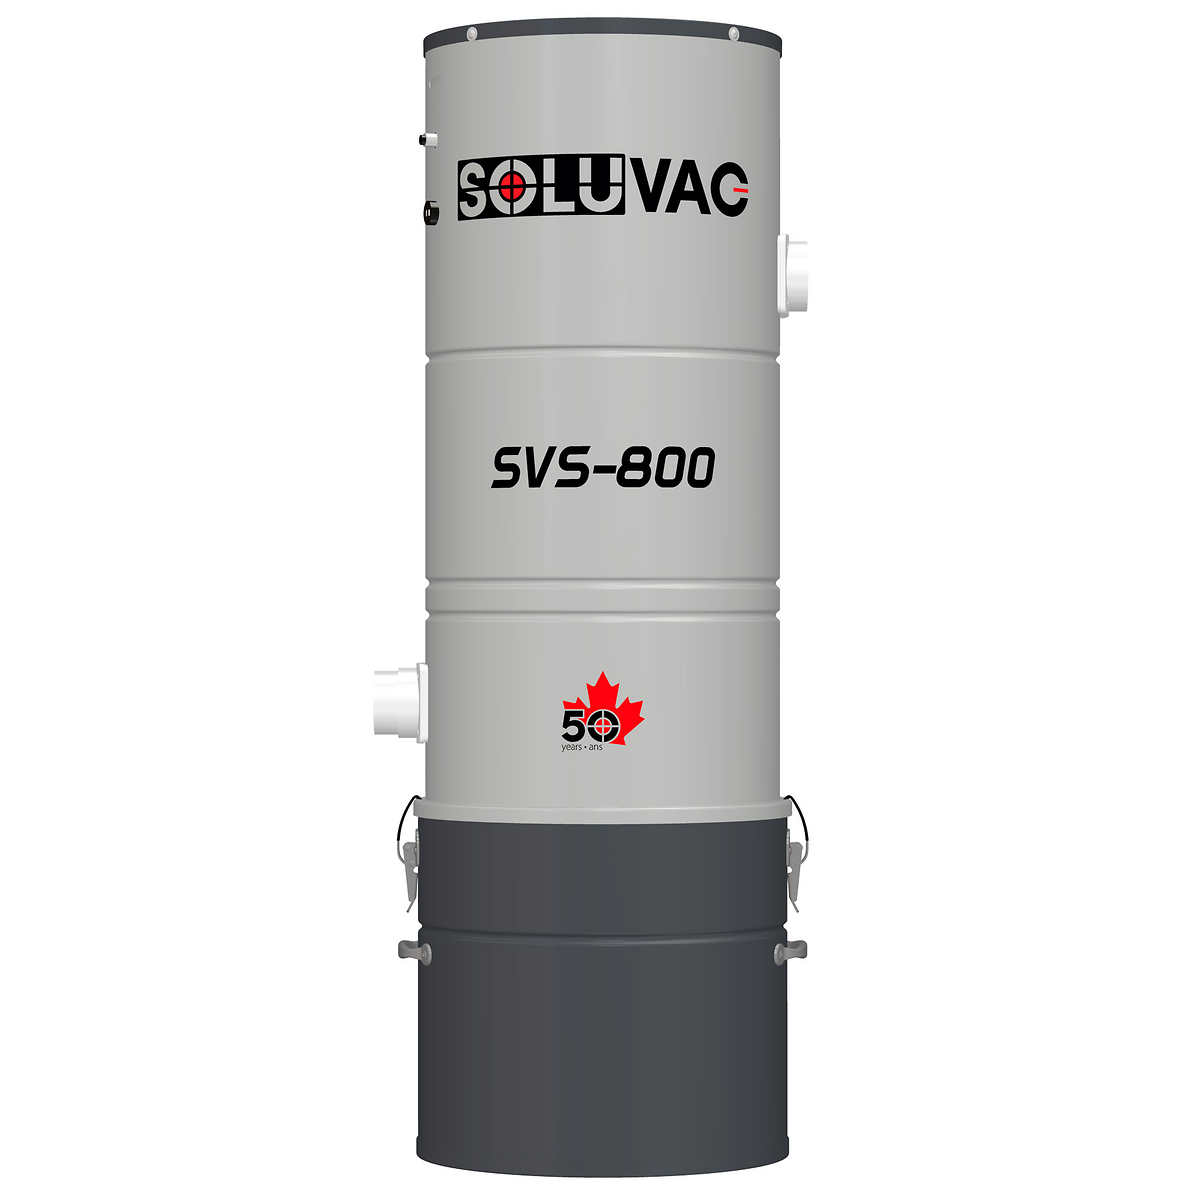 Soluvac SVS-800